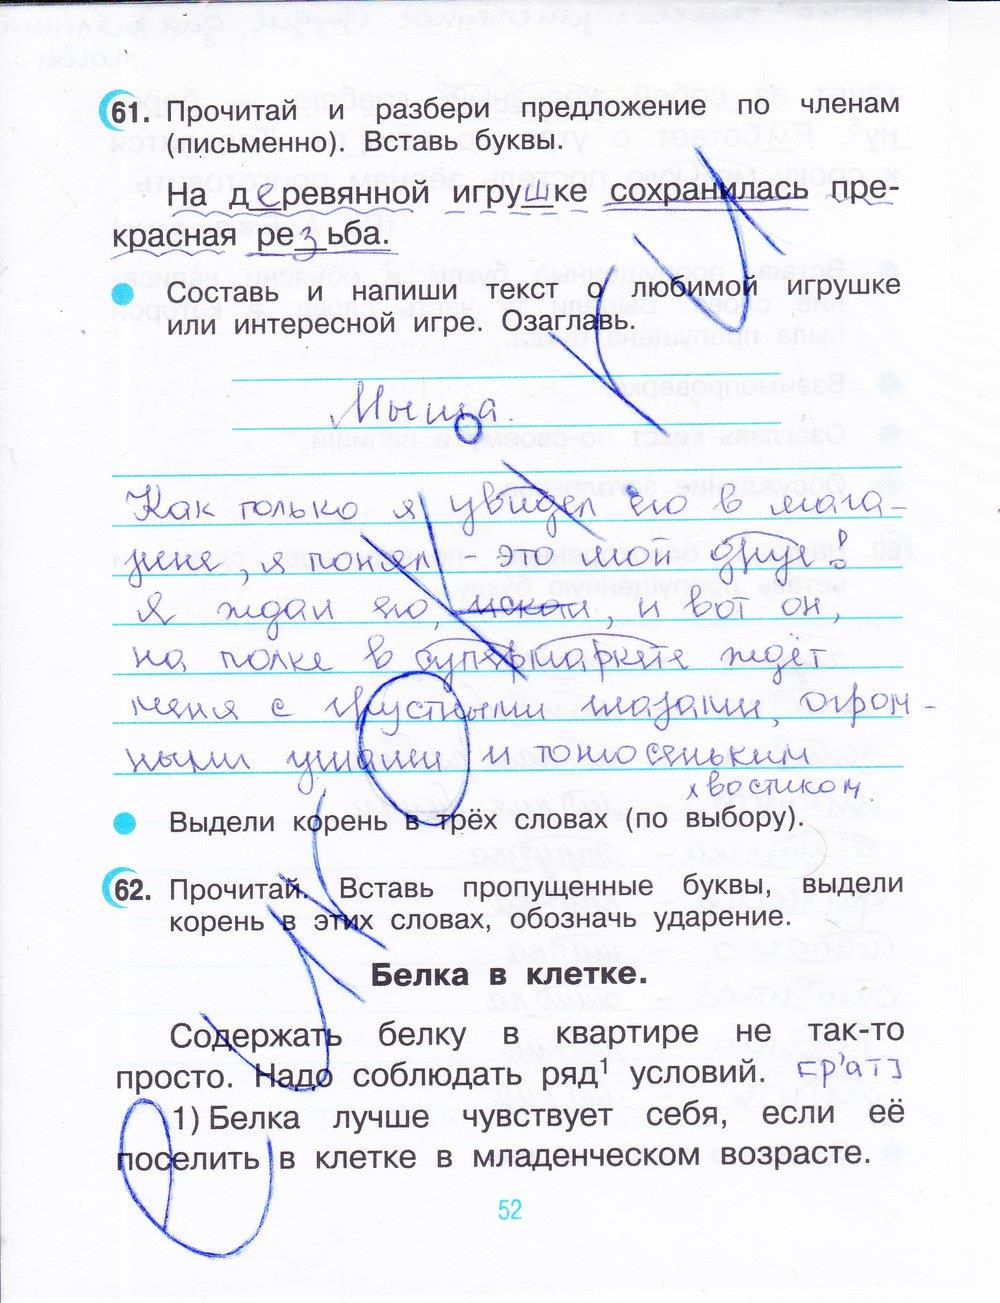 гдз 3 класс рабочая тетрадь часть 1 страница 52 русский язык Рамзаева, Савинкина